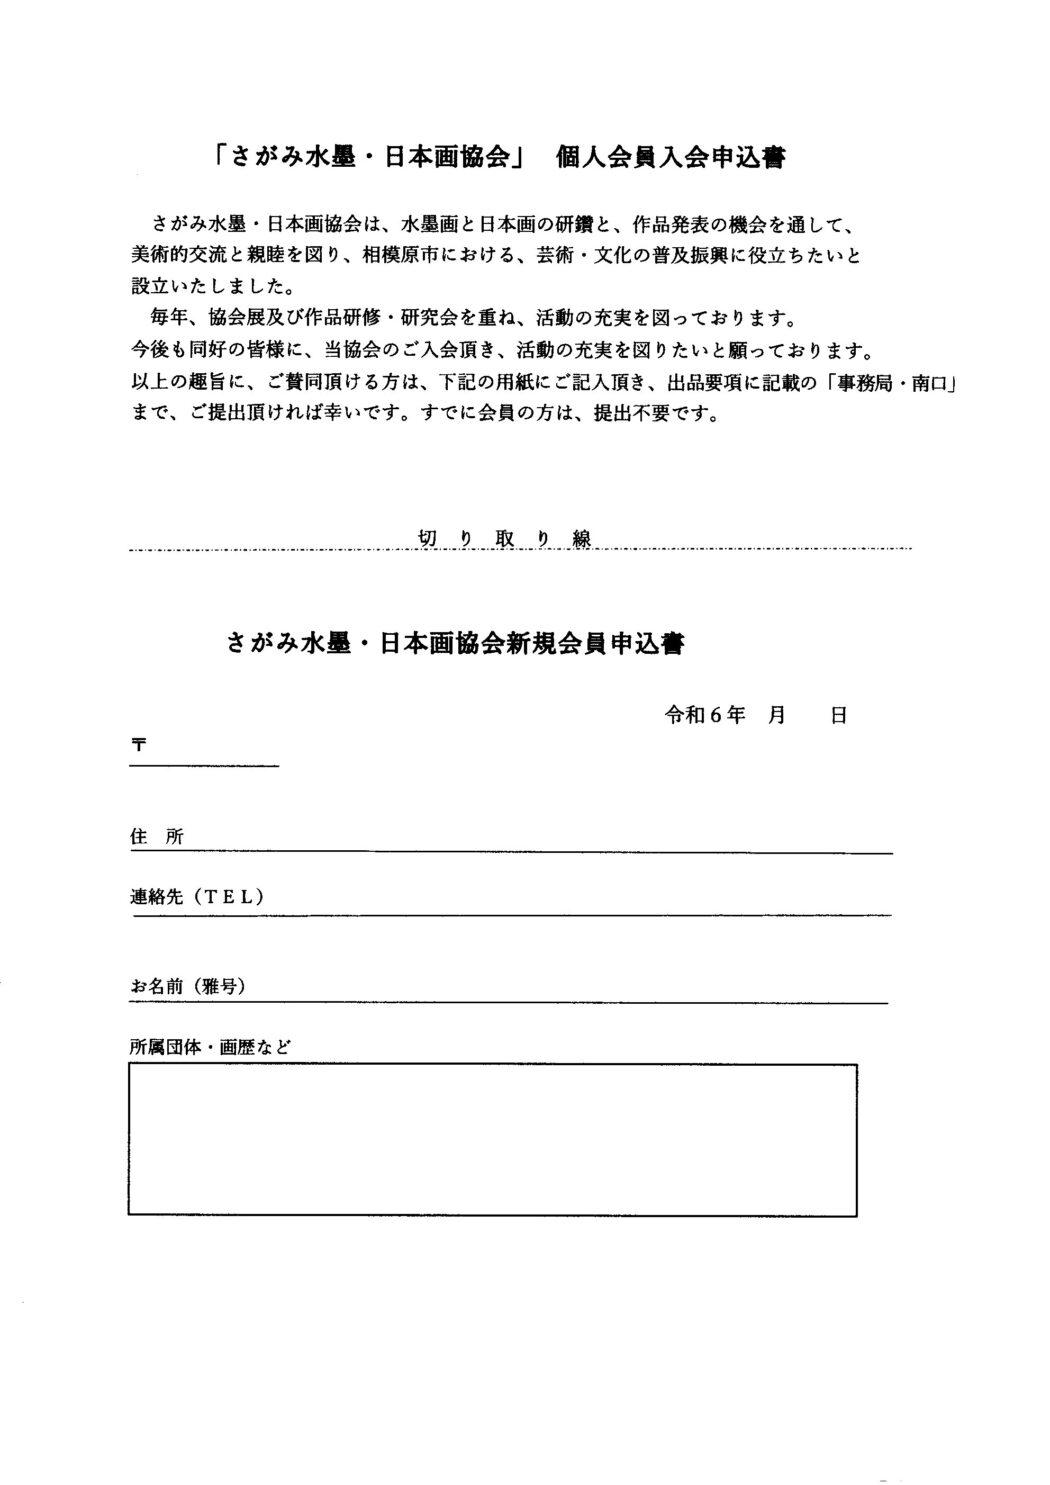 「さがみ水墨・日本画協会」個人会員入会申込書